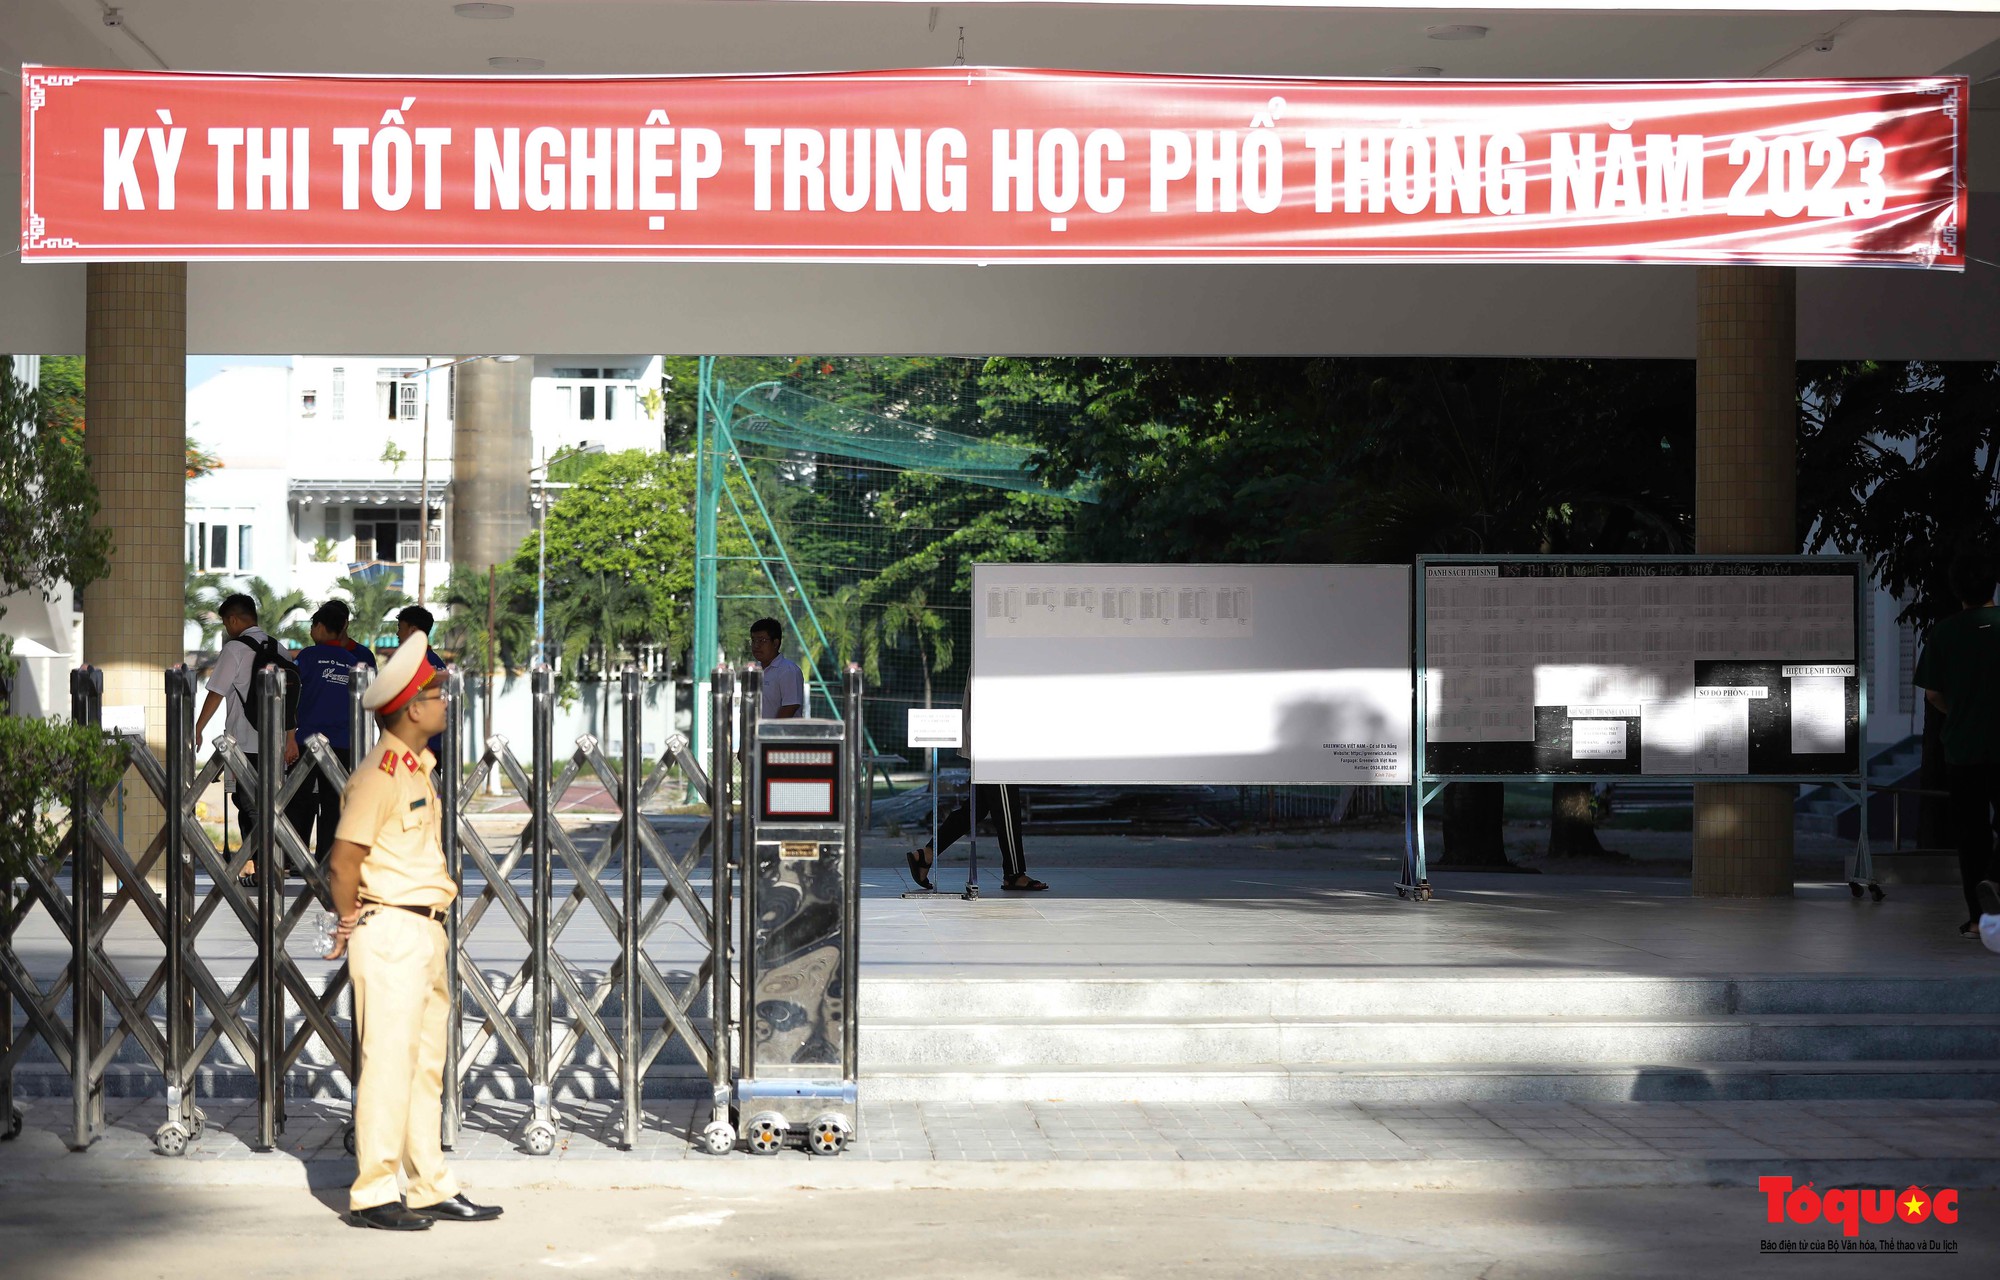 Cảnh sát giao thông Đà Nẵng phát nước và bút chì cho các sĩ tử - Ảnh 4.